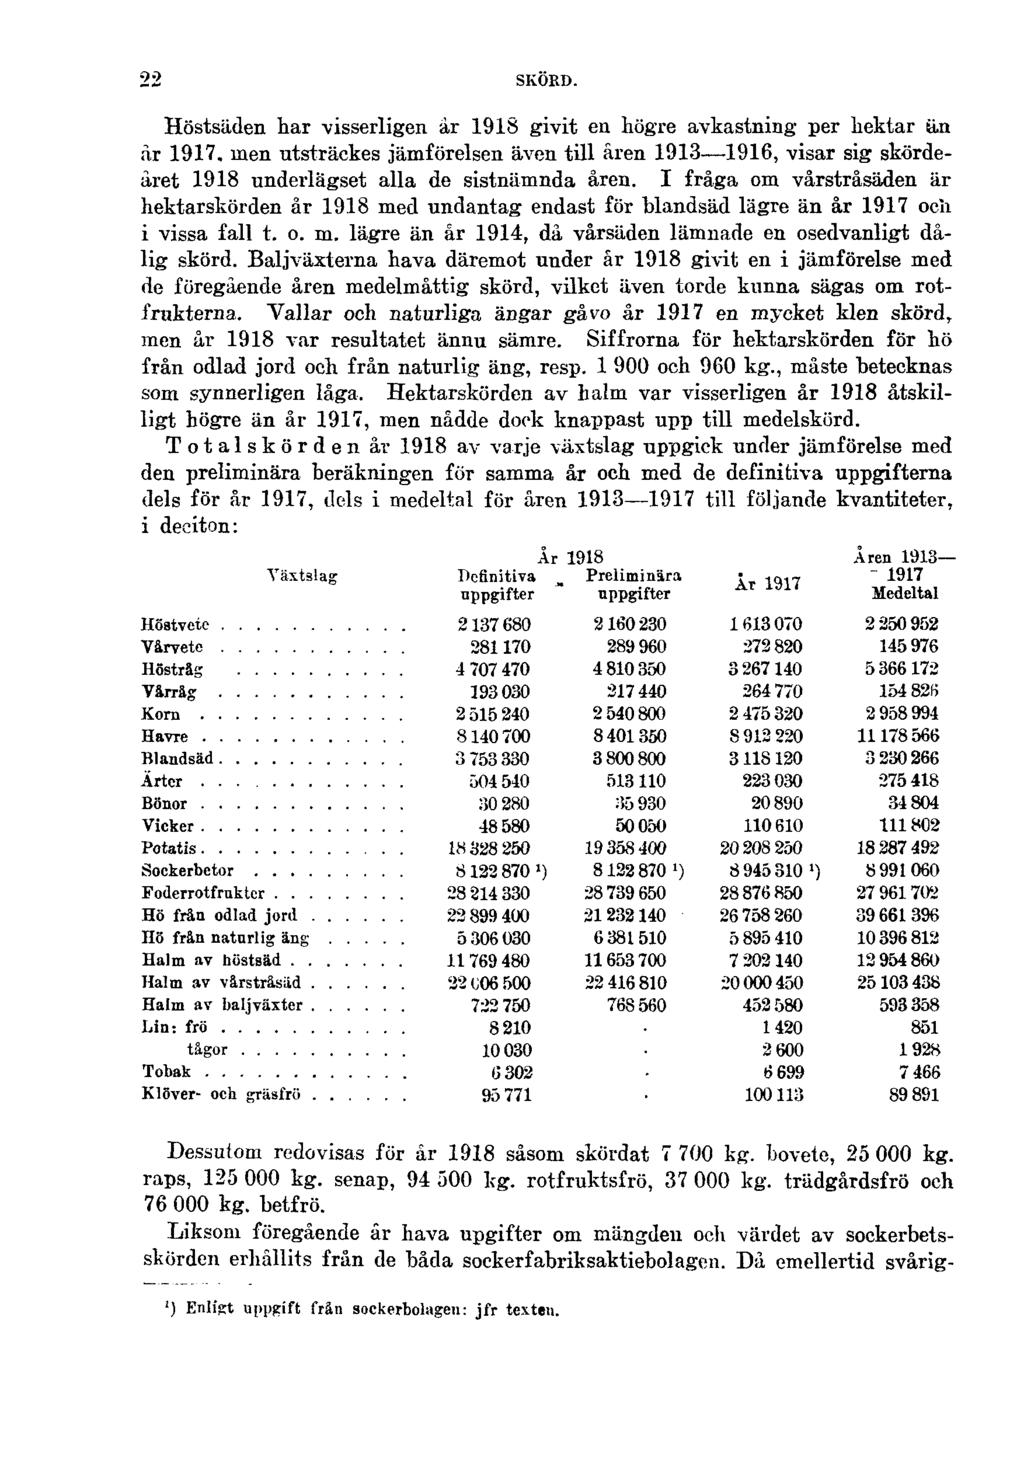 22 SKÖRD. Höstsäden har visserligen år 1918 givit en högre avkastning per hektar än år 1917.